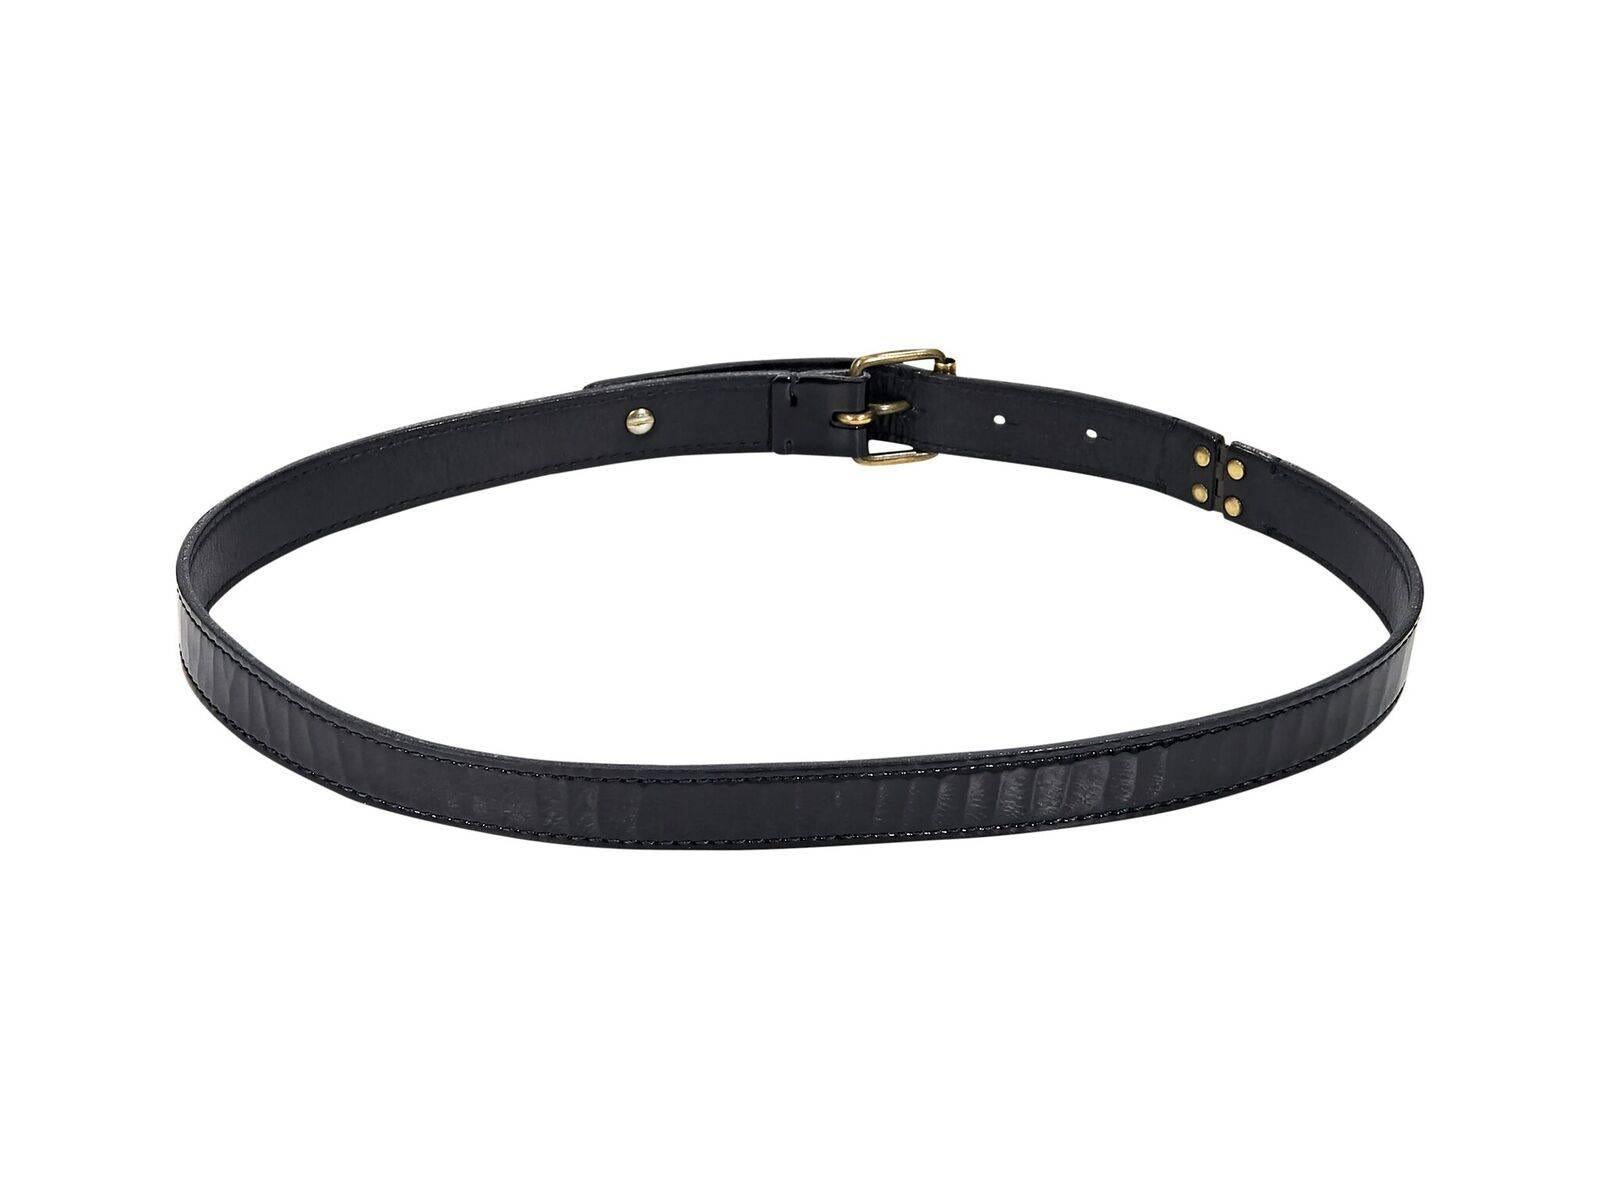 Product details:  Black patent leather belt by Lanvin.  Adjustable buckle closure.  Antiqued goldtone hardware.  34